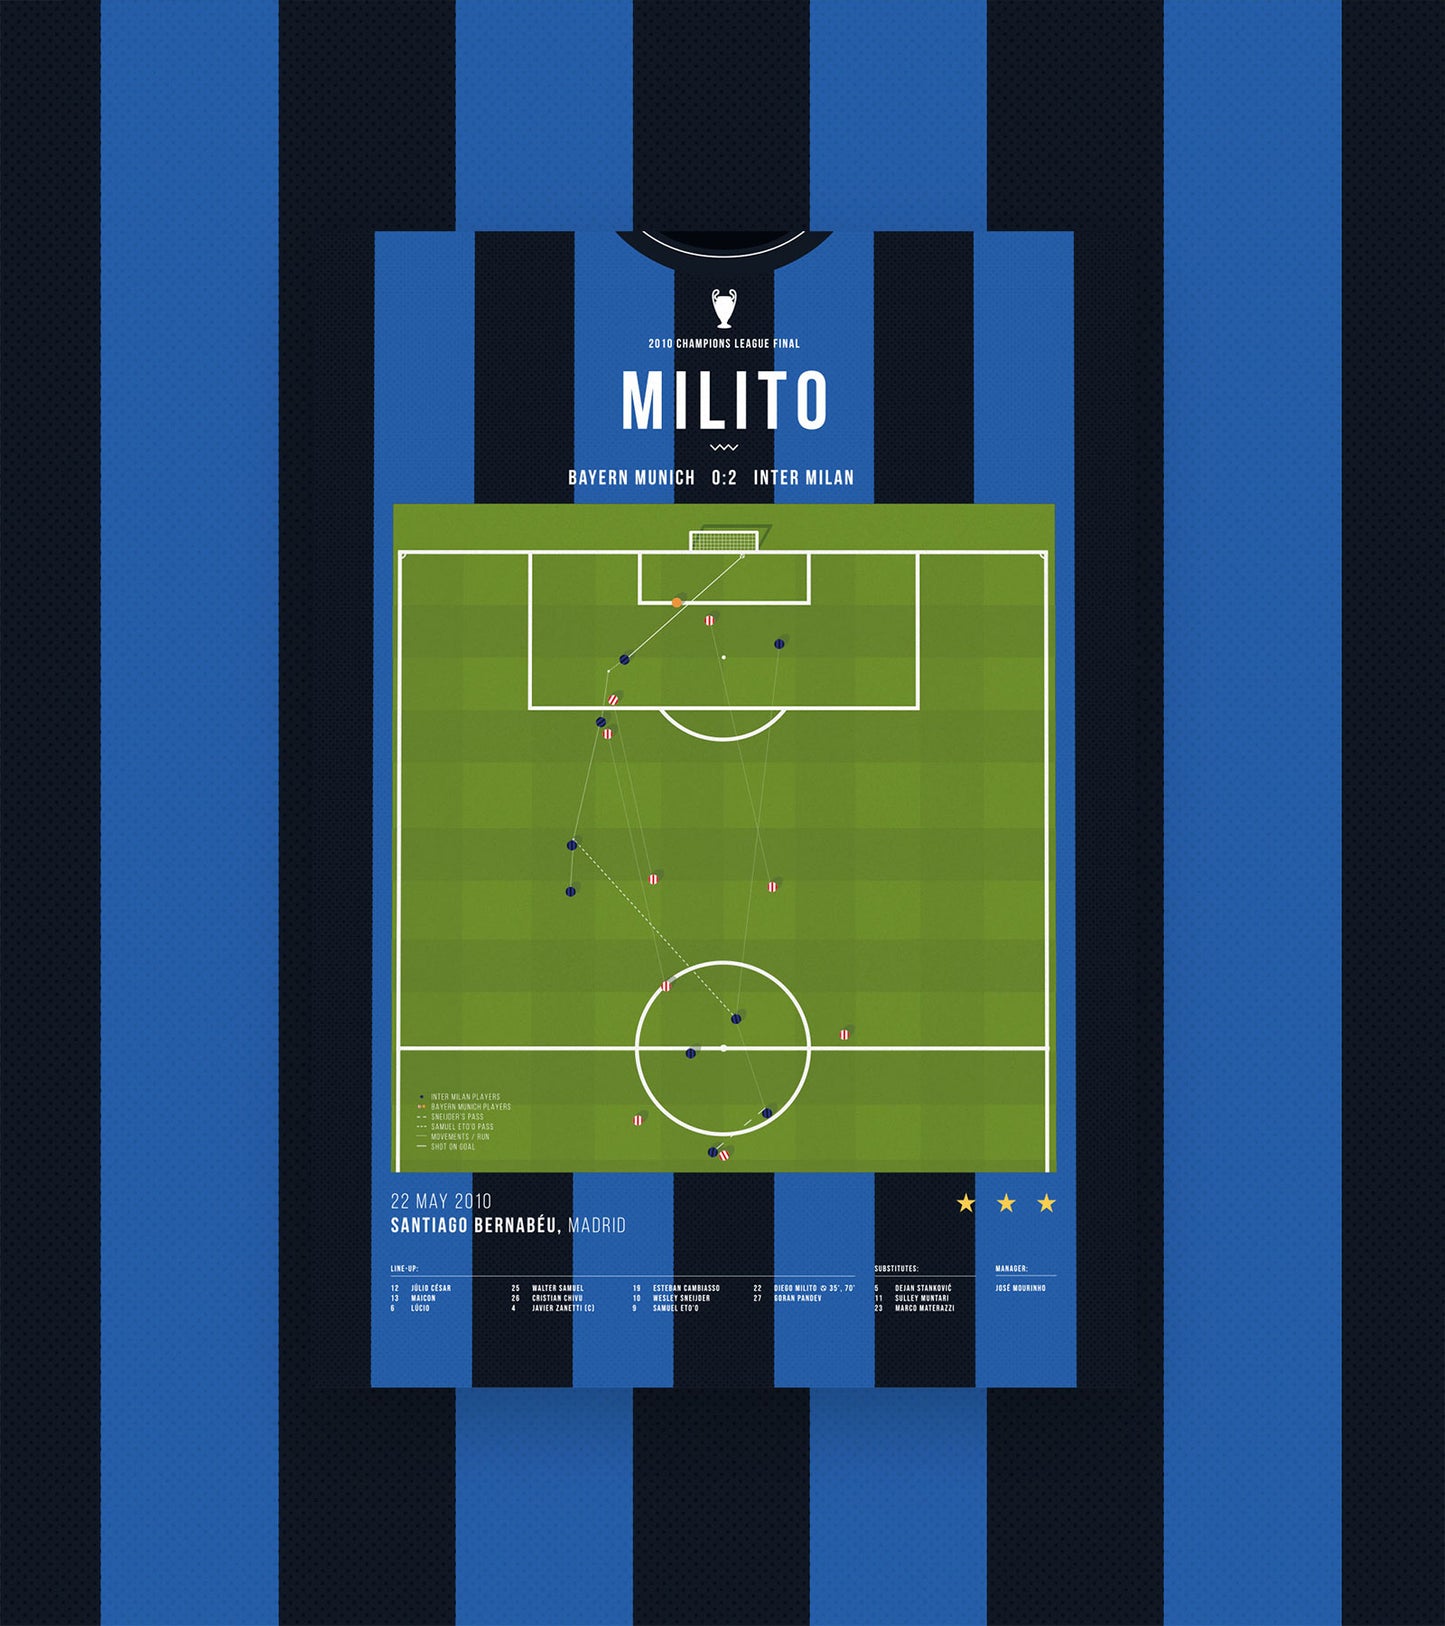 Le but gagnant de l'UCL de Diego Milito contre le Bayern